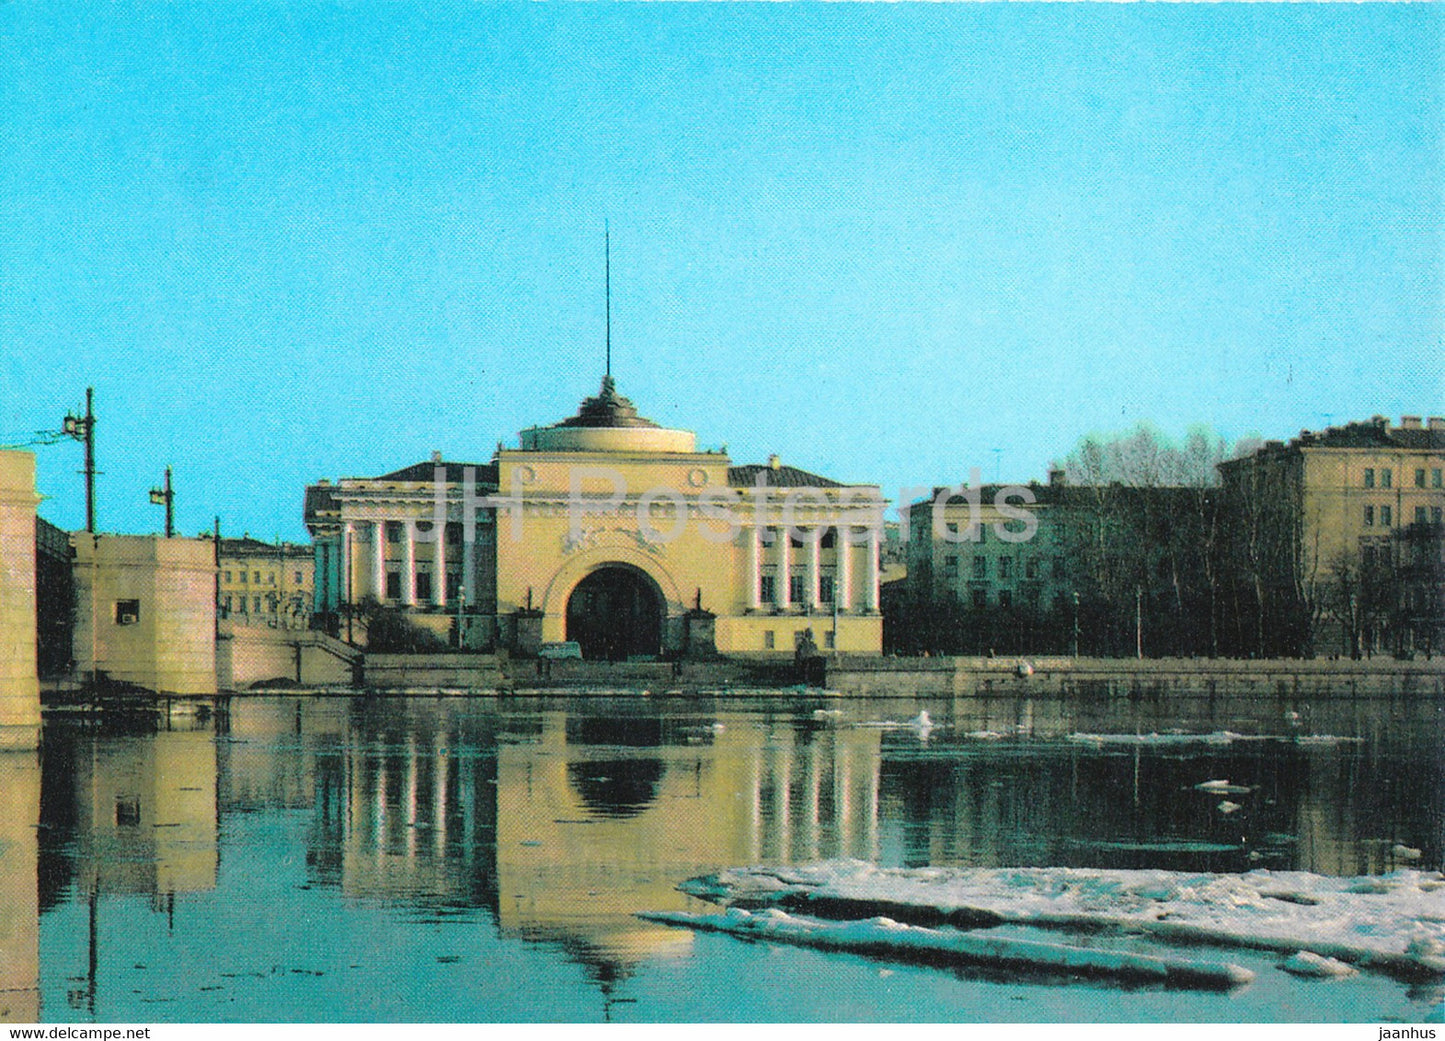 Leningrad - St Petersburg - Admiralty Pavilion - postal stationery - 1990 - Russia USSR - unused - JH Postcards